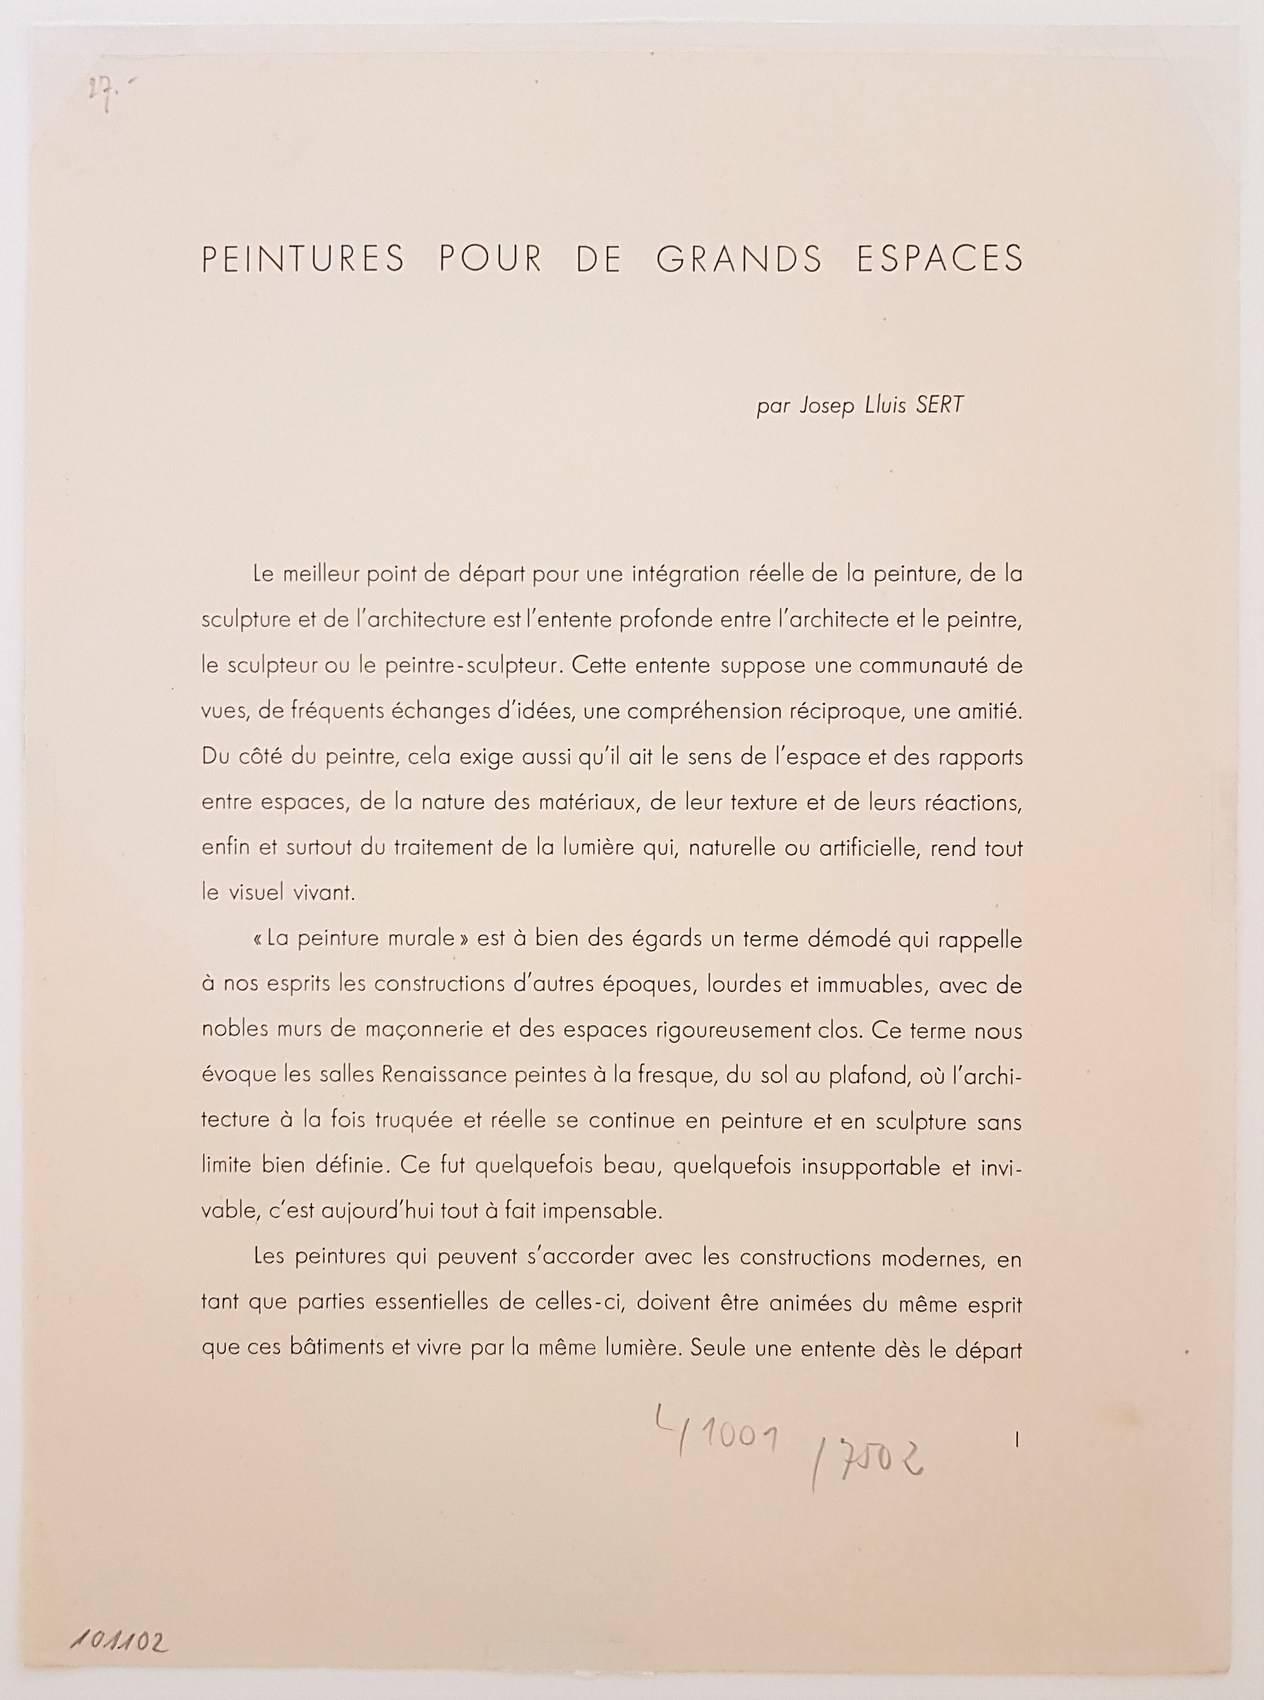 One plate from Derrière le Miroir no. 128: Peintures Murales de Miró - Print by Joan Miró